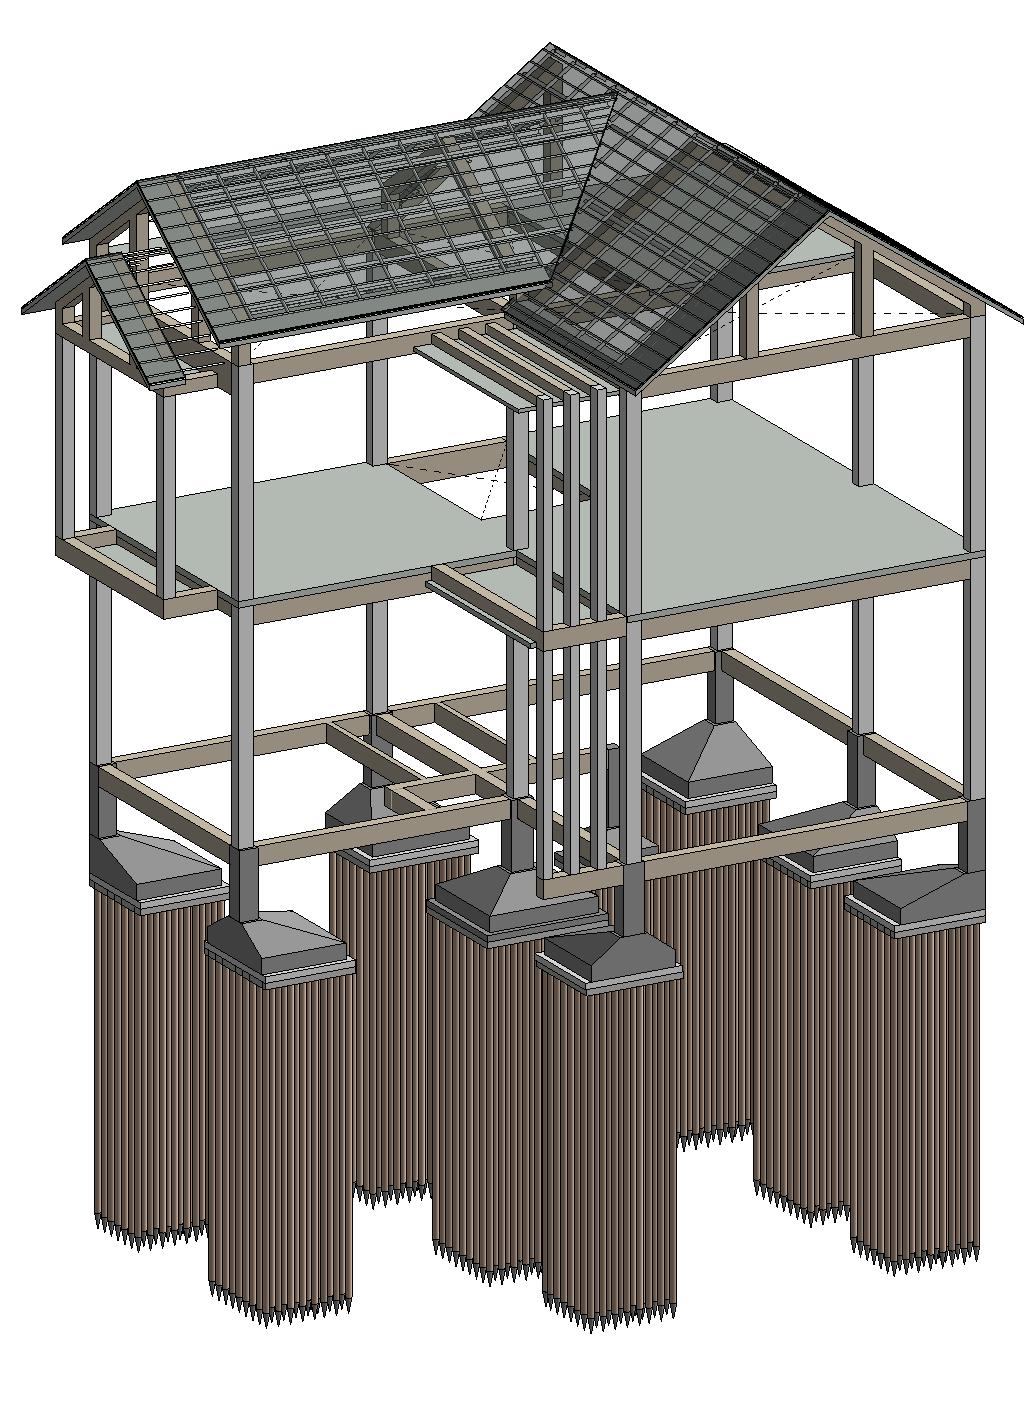 Detailed drawing of 2-storey pre-engineered steel building